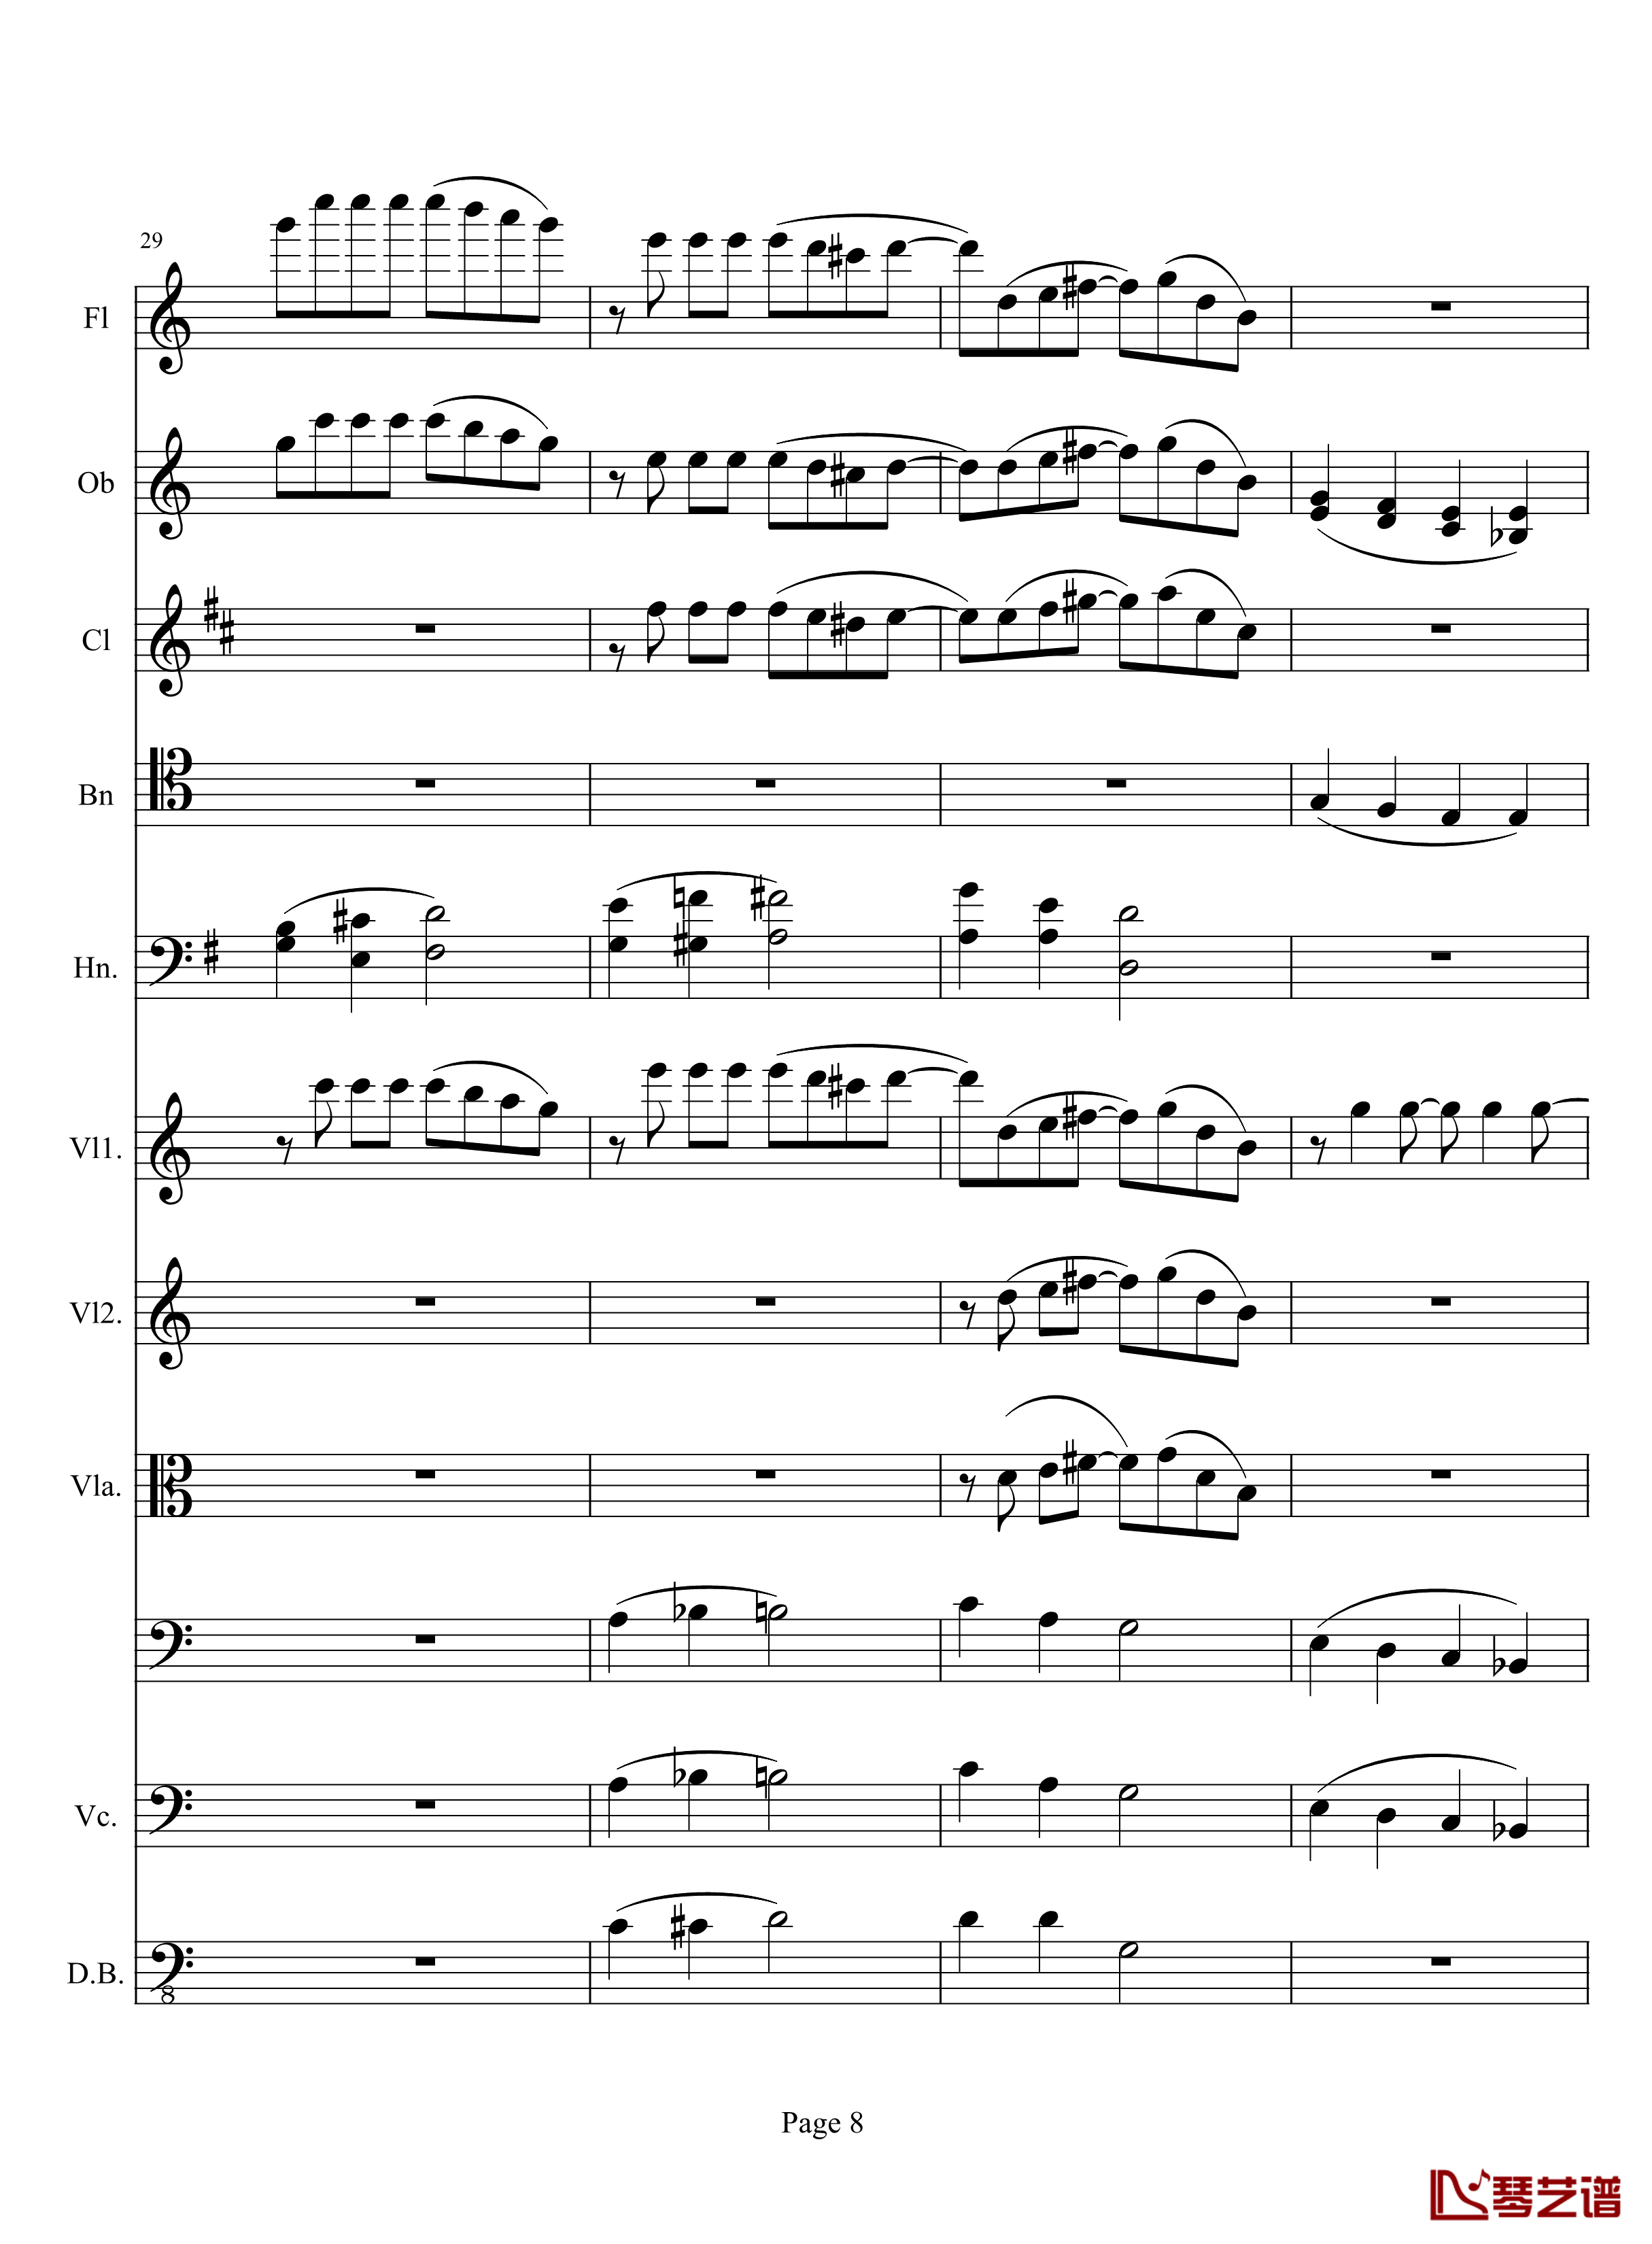 奏鸣曲之交响钢琴谱-第10首-2-贝多芬-beethoven